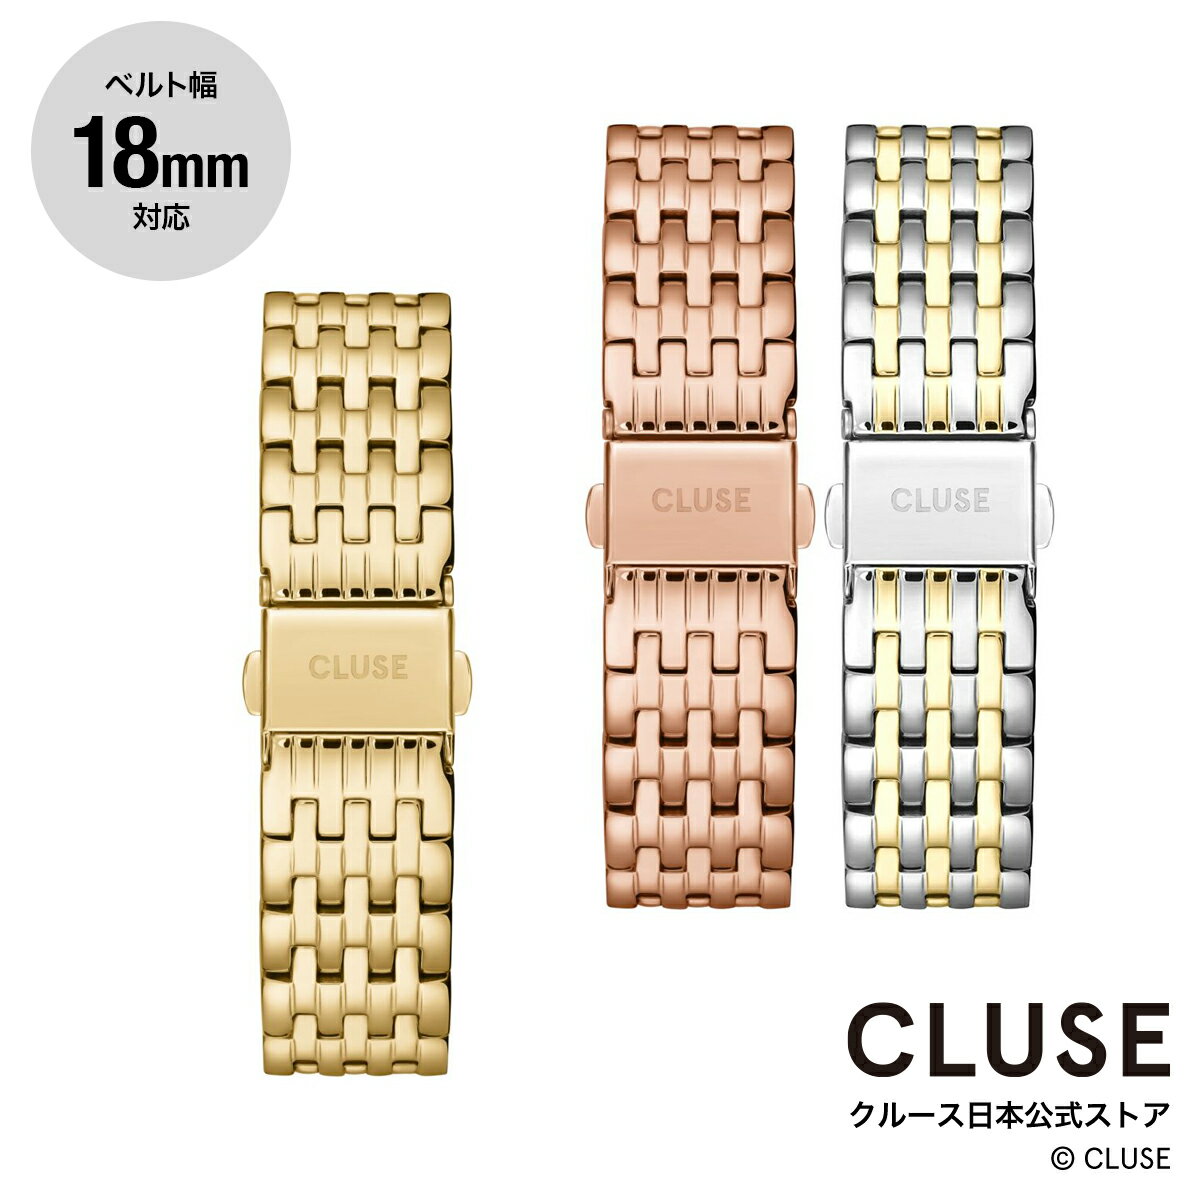 クルース CLUSE 日本公式ストア 18mm ステンレスマルチリンクベルト ゴールド ローズゴールド 替ベルト 替バンド